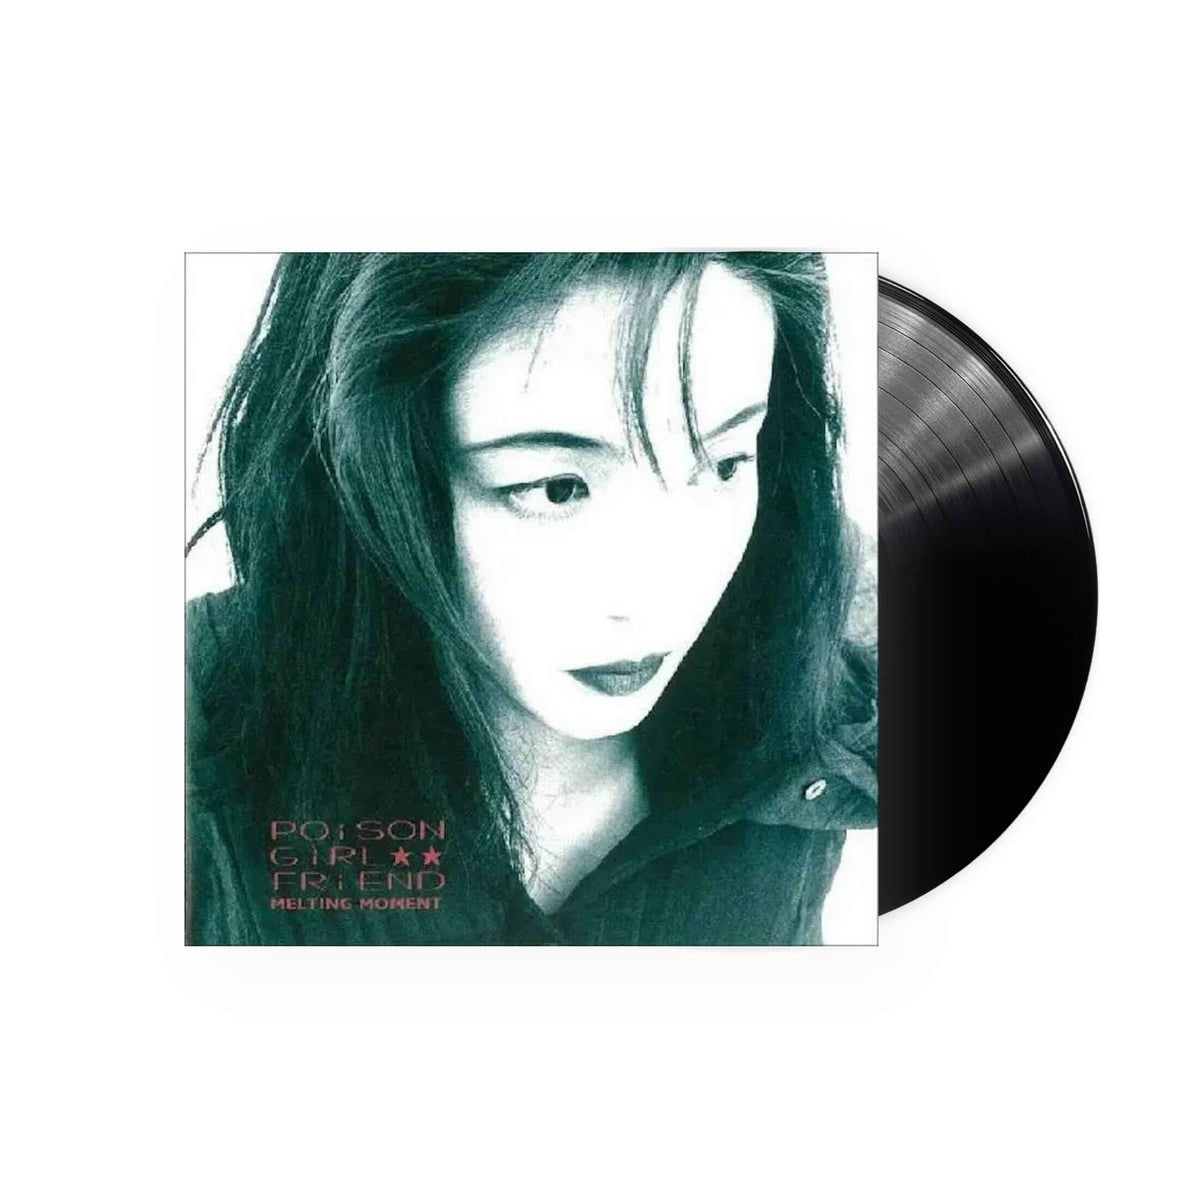 Poison Girl Friend - Melting Moment LP (Black Vinyl) – Plastic Stone 